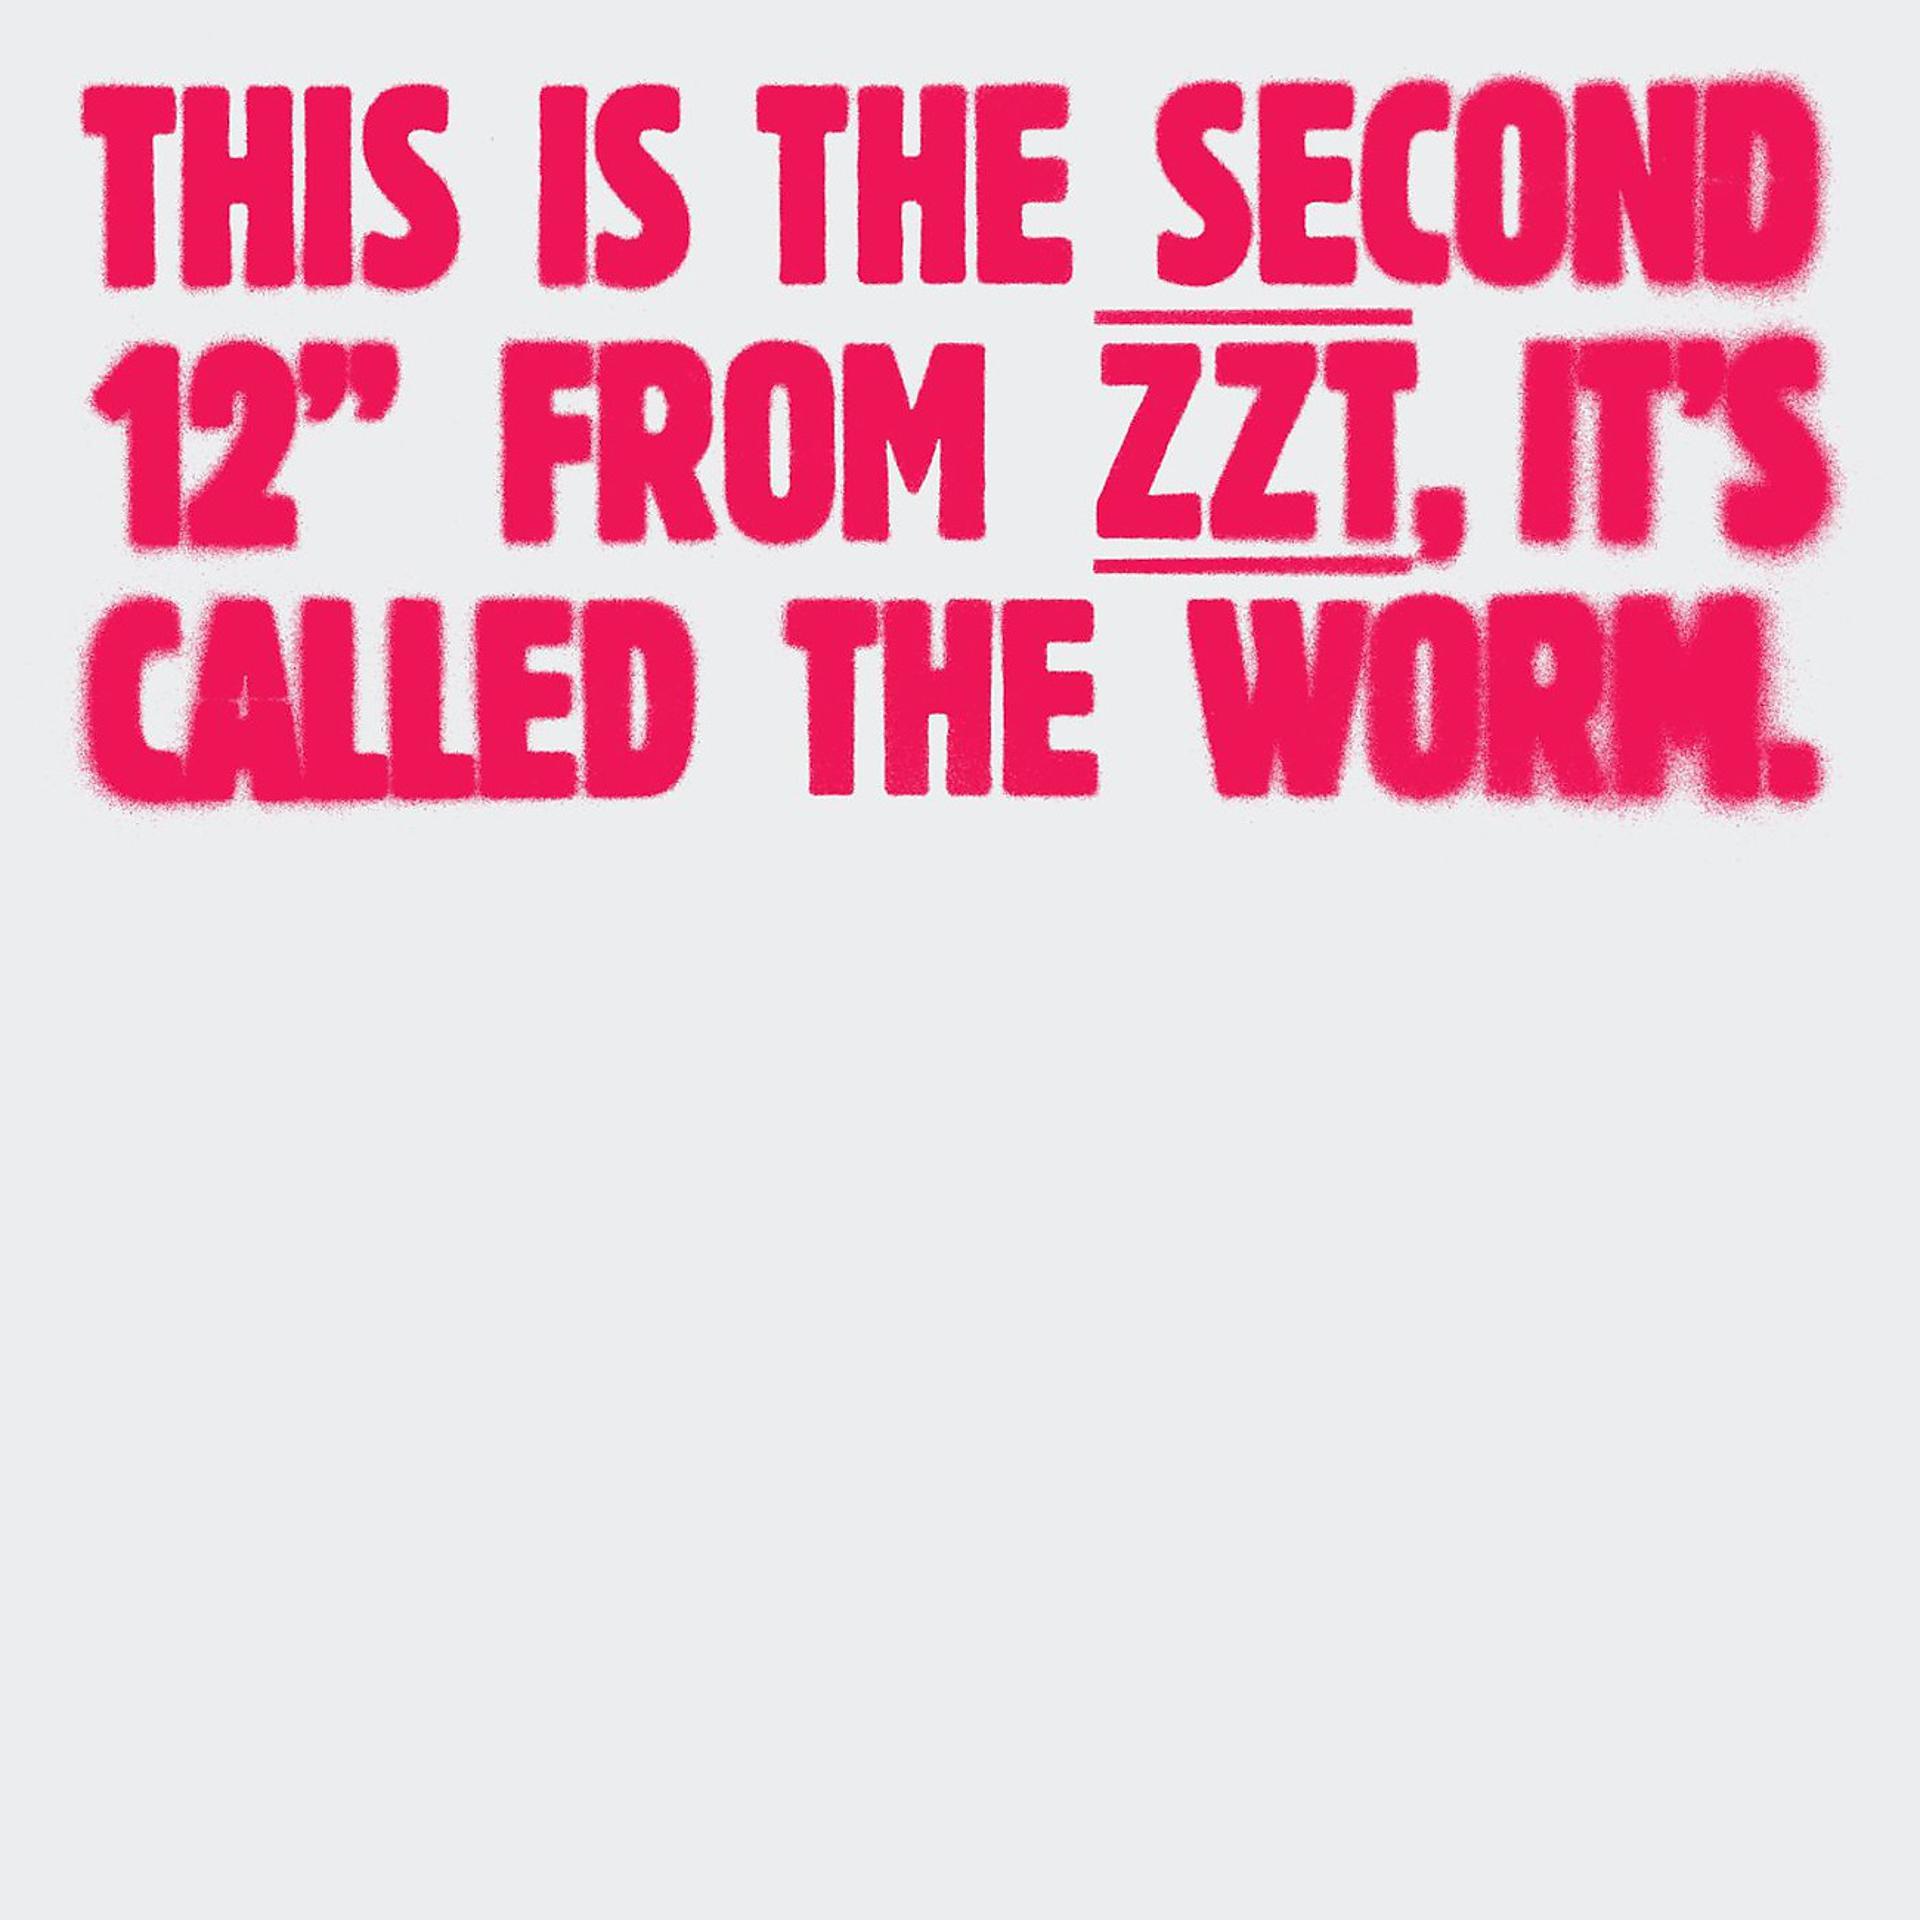 Постер альбома The Worm